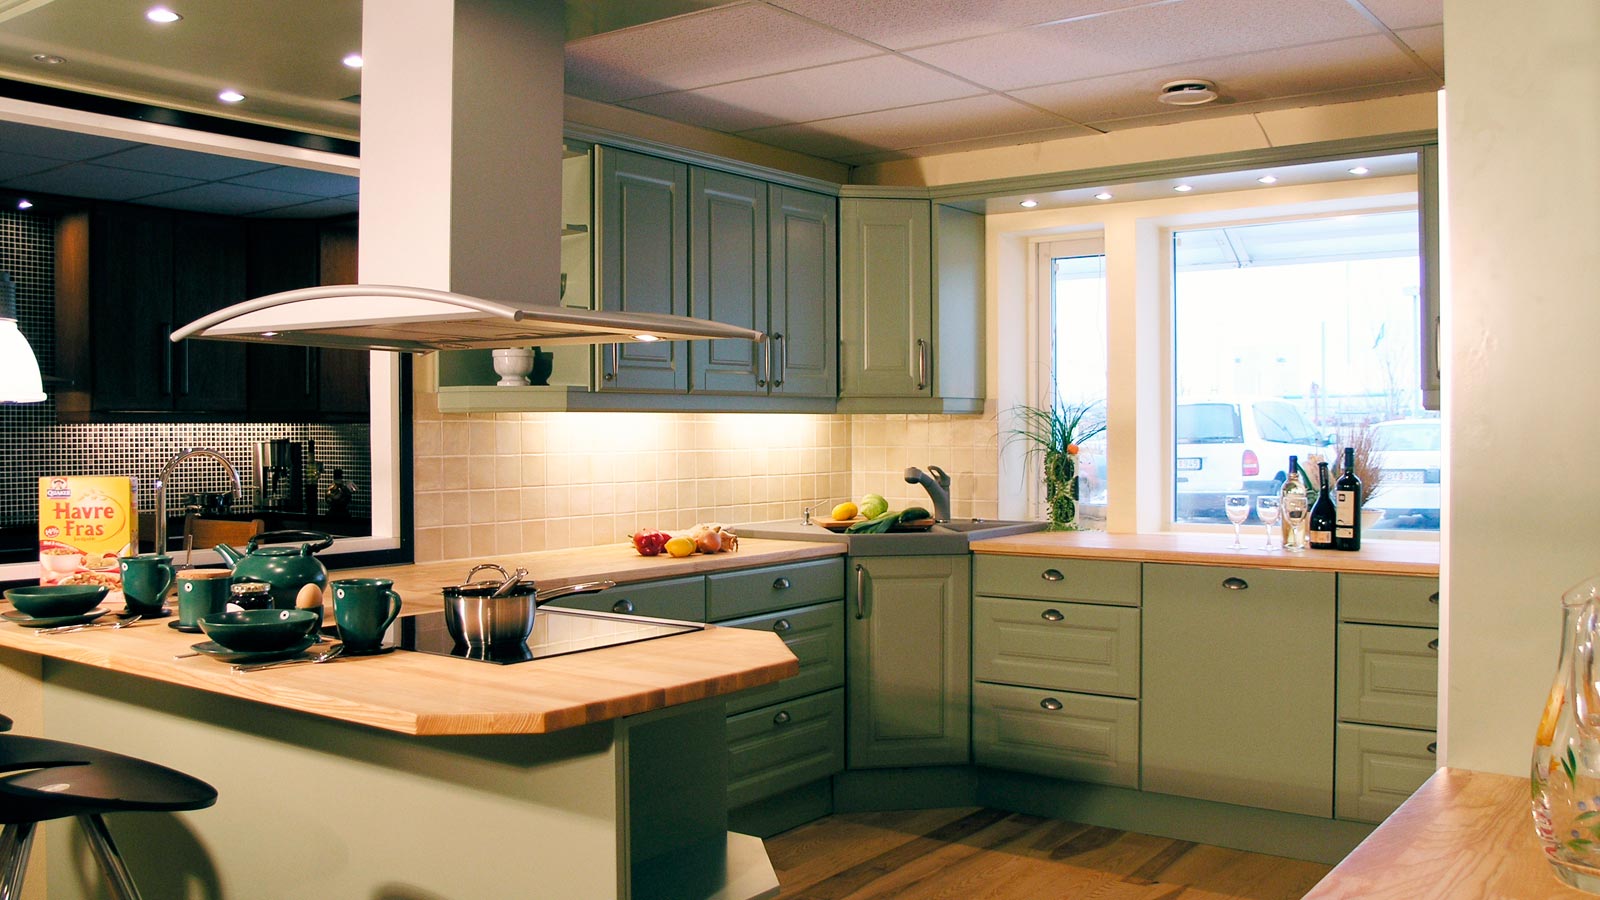 Köksluckor från Smartkök. Exempelbild på ett kök med köksluckor i klassisk stil tillverkade i massivt trä. Luckorna är gröna och bänkskivan är i ljust trä.